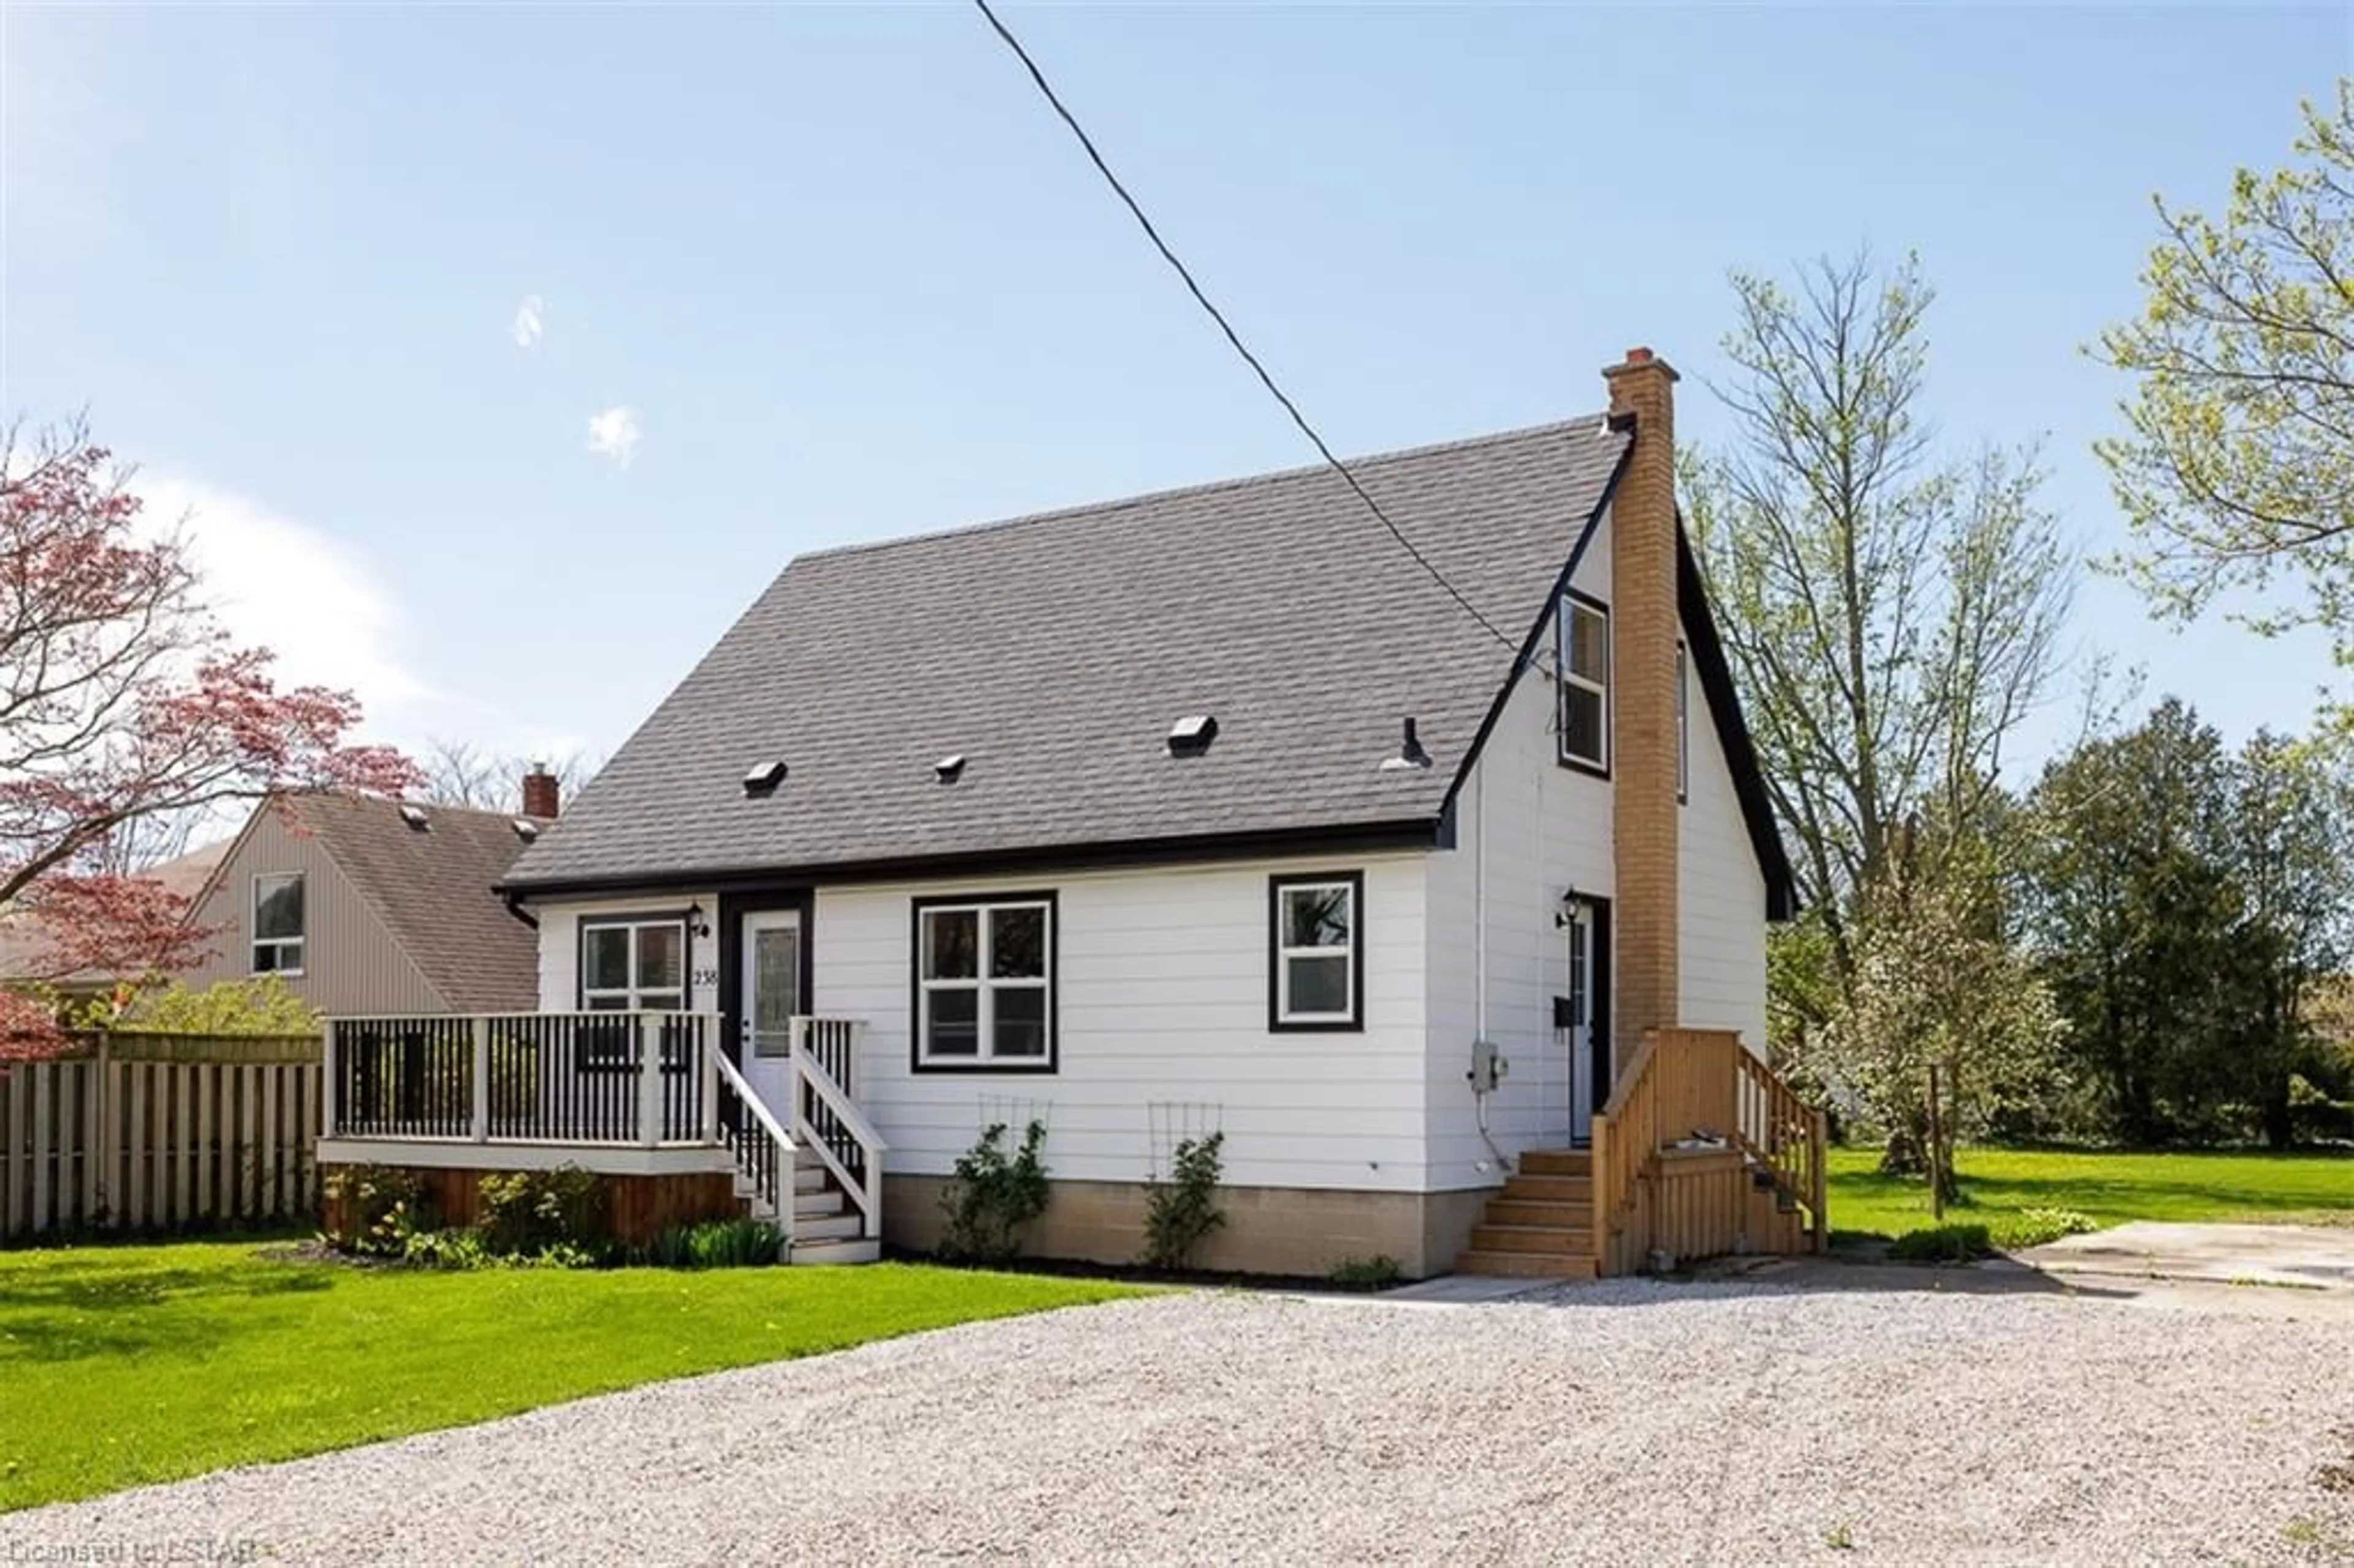 Cottage for 238 Alma St, St. Thomas Ontario N5P 3B8